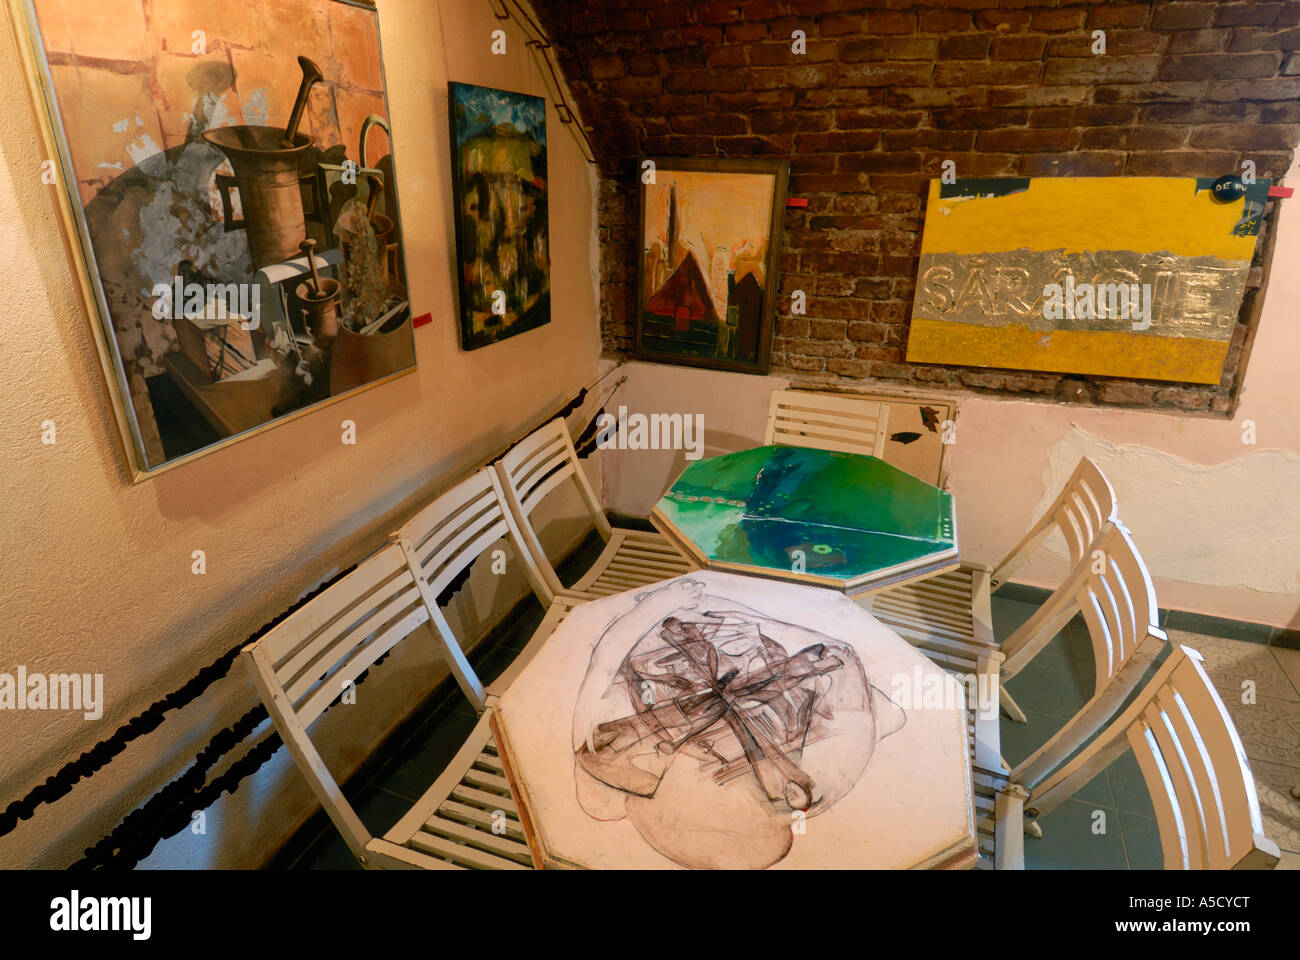 Roumanie Sibiu. Capitale européenne de la Culture 2007. Café d'art, Galerie d'art et point de rencontre des artistes Banque D'Images